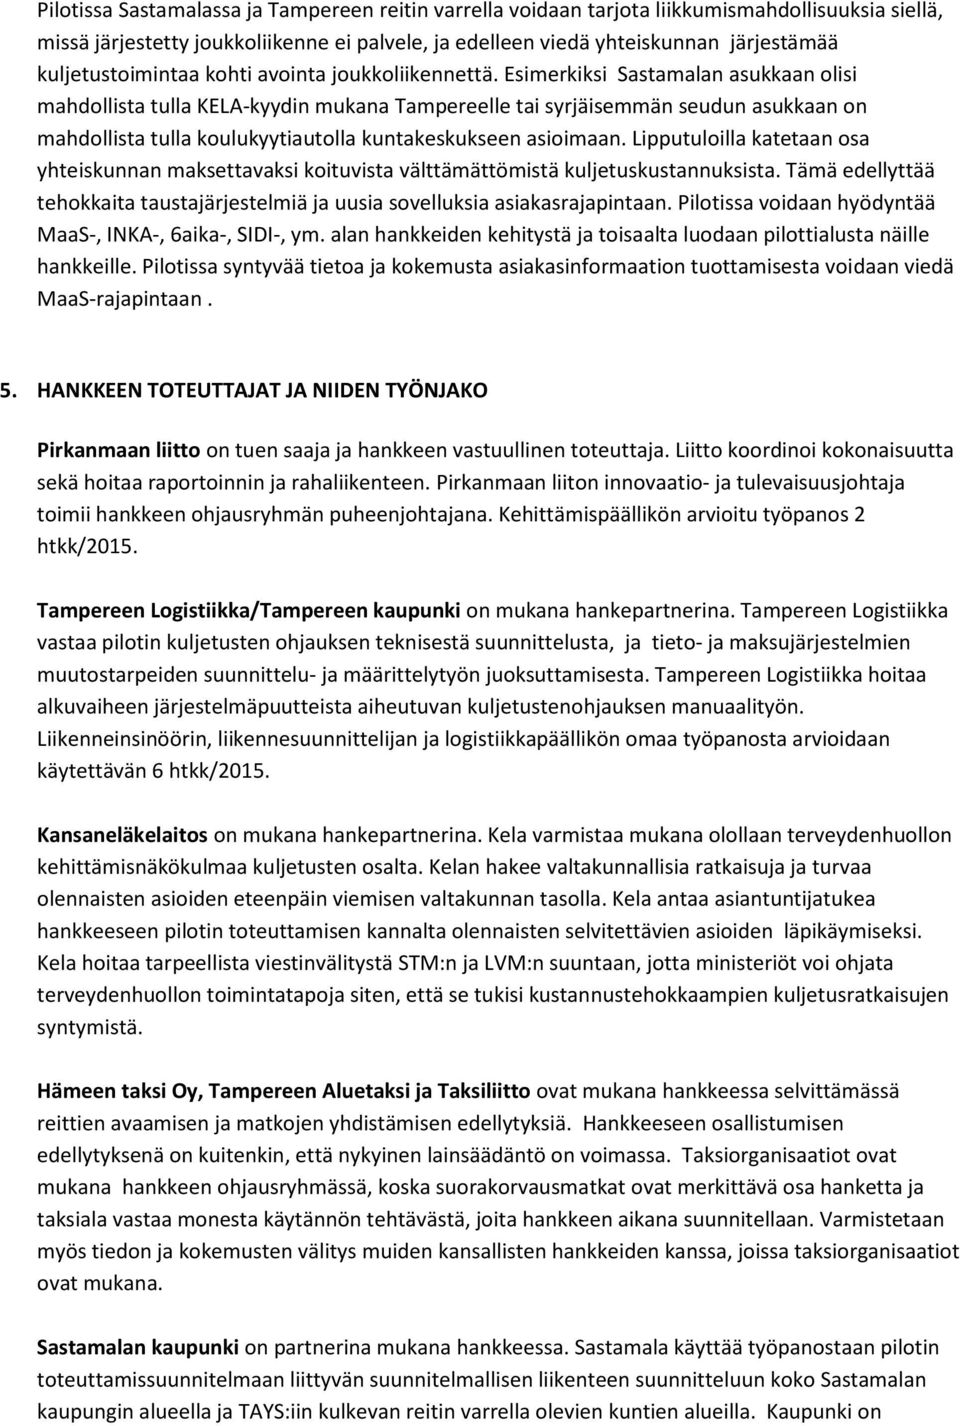 Esimerkiksi Sastamalan asukkaan olisi mahdollista tulla KELA-kyydin mukana Tampereelle tai syrjäisemmän seudun asukkaan on mahdollista tulla koulukyytiautolla kuntakeskukseen asioimaan.